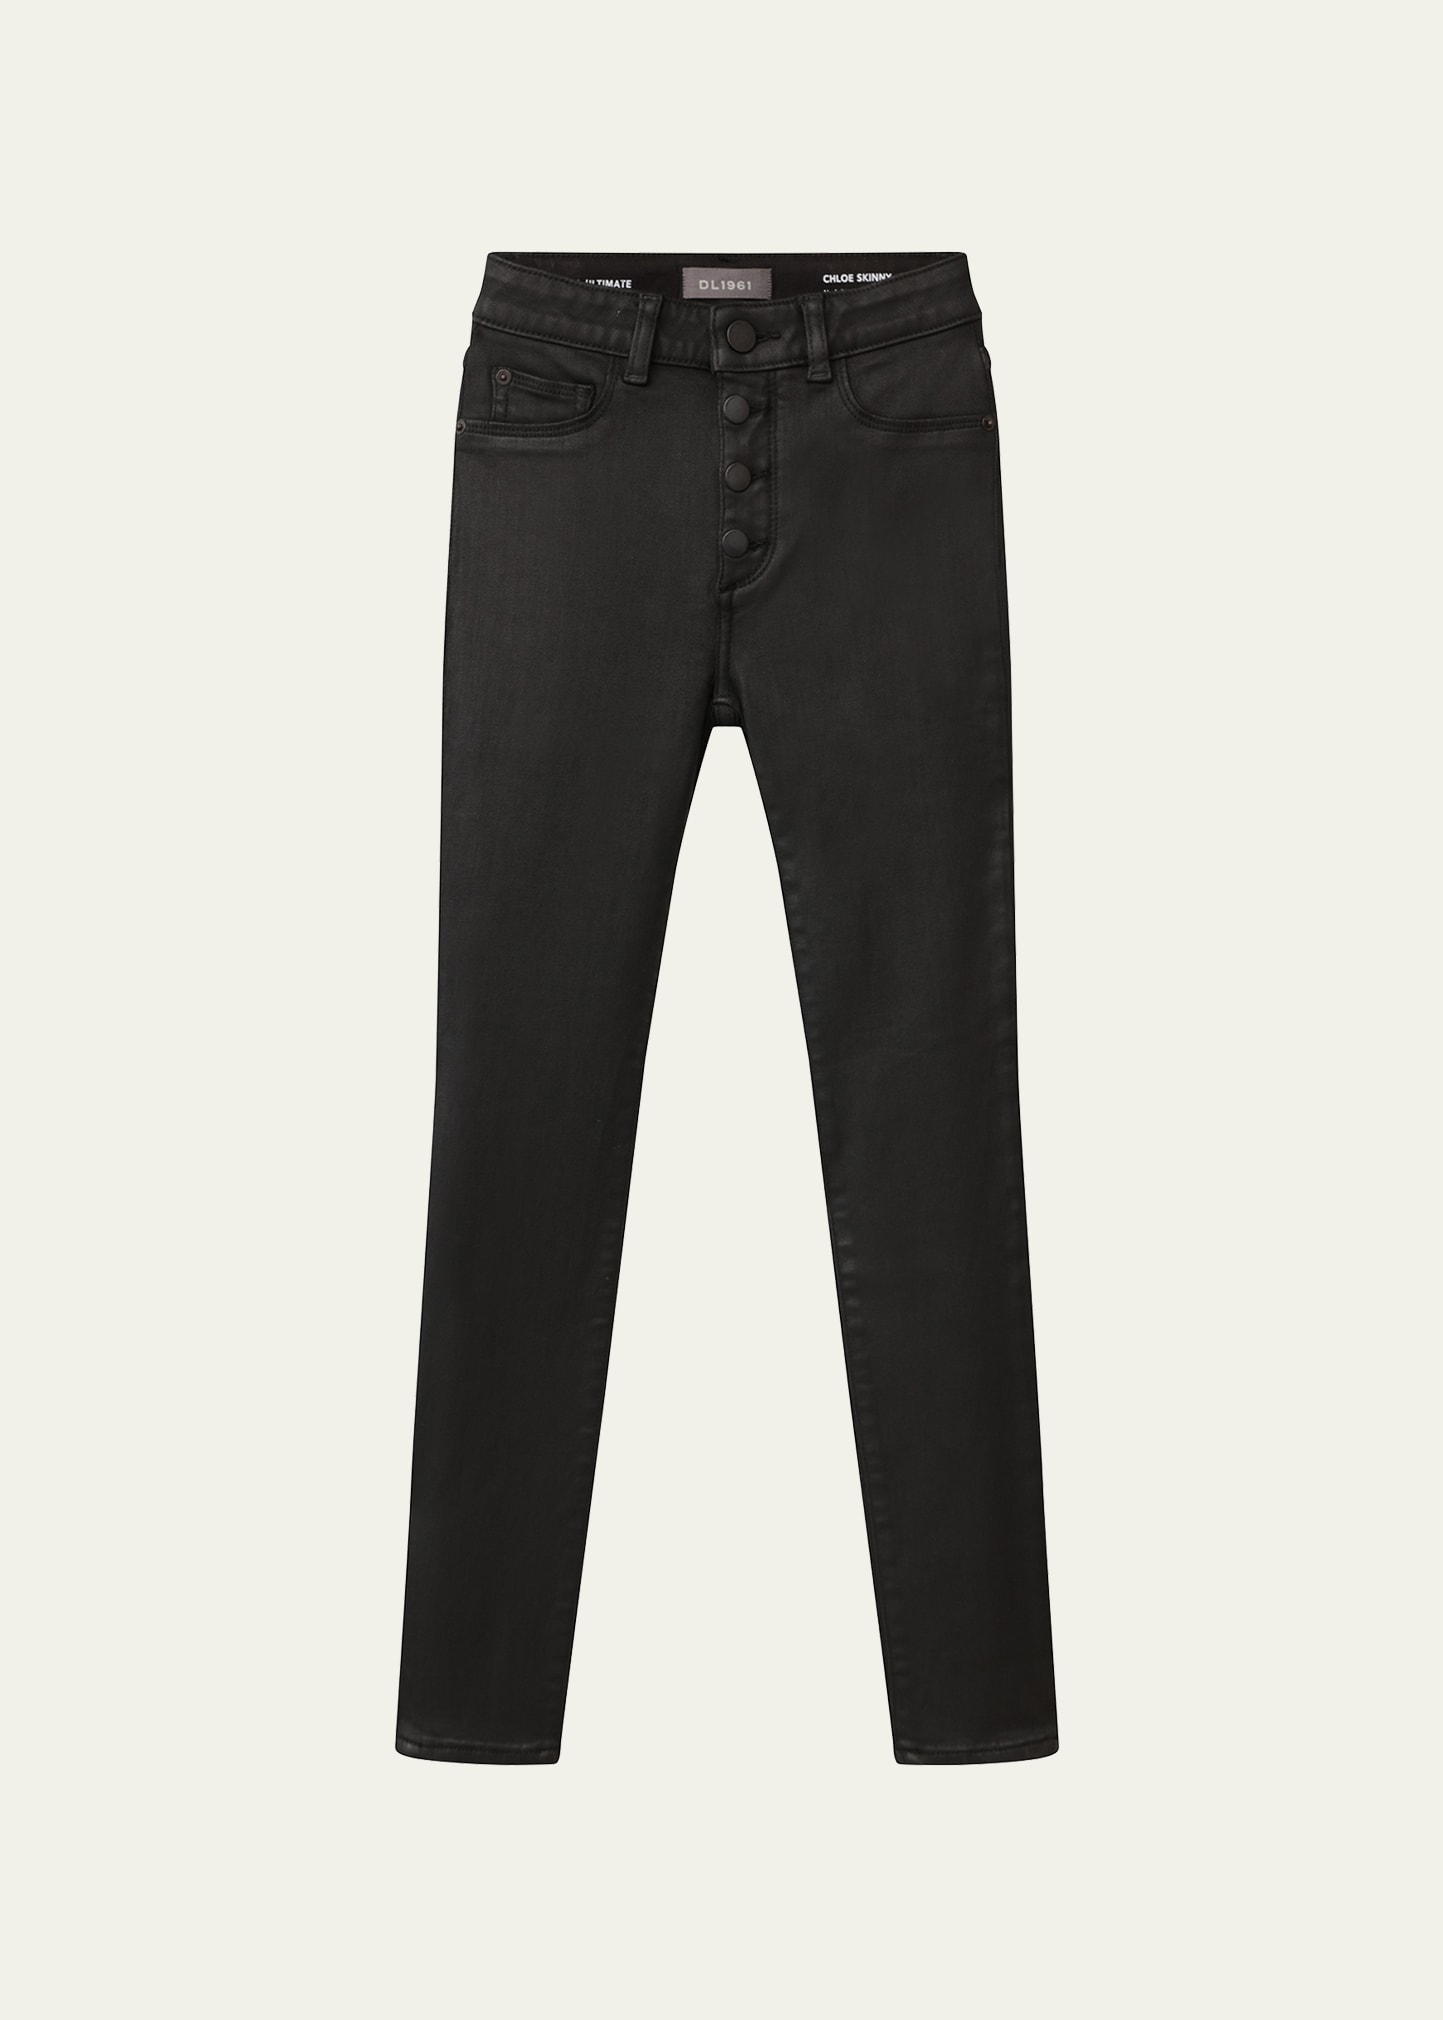 DL Premium Denim Girl's Chloe Skinny Jeans, Size 7-16